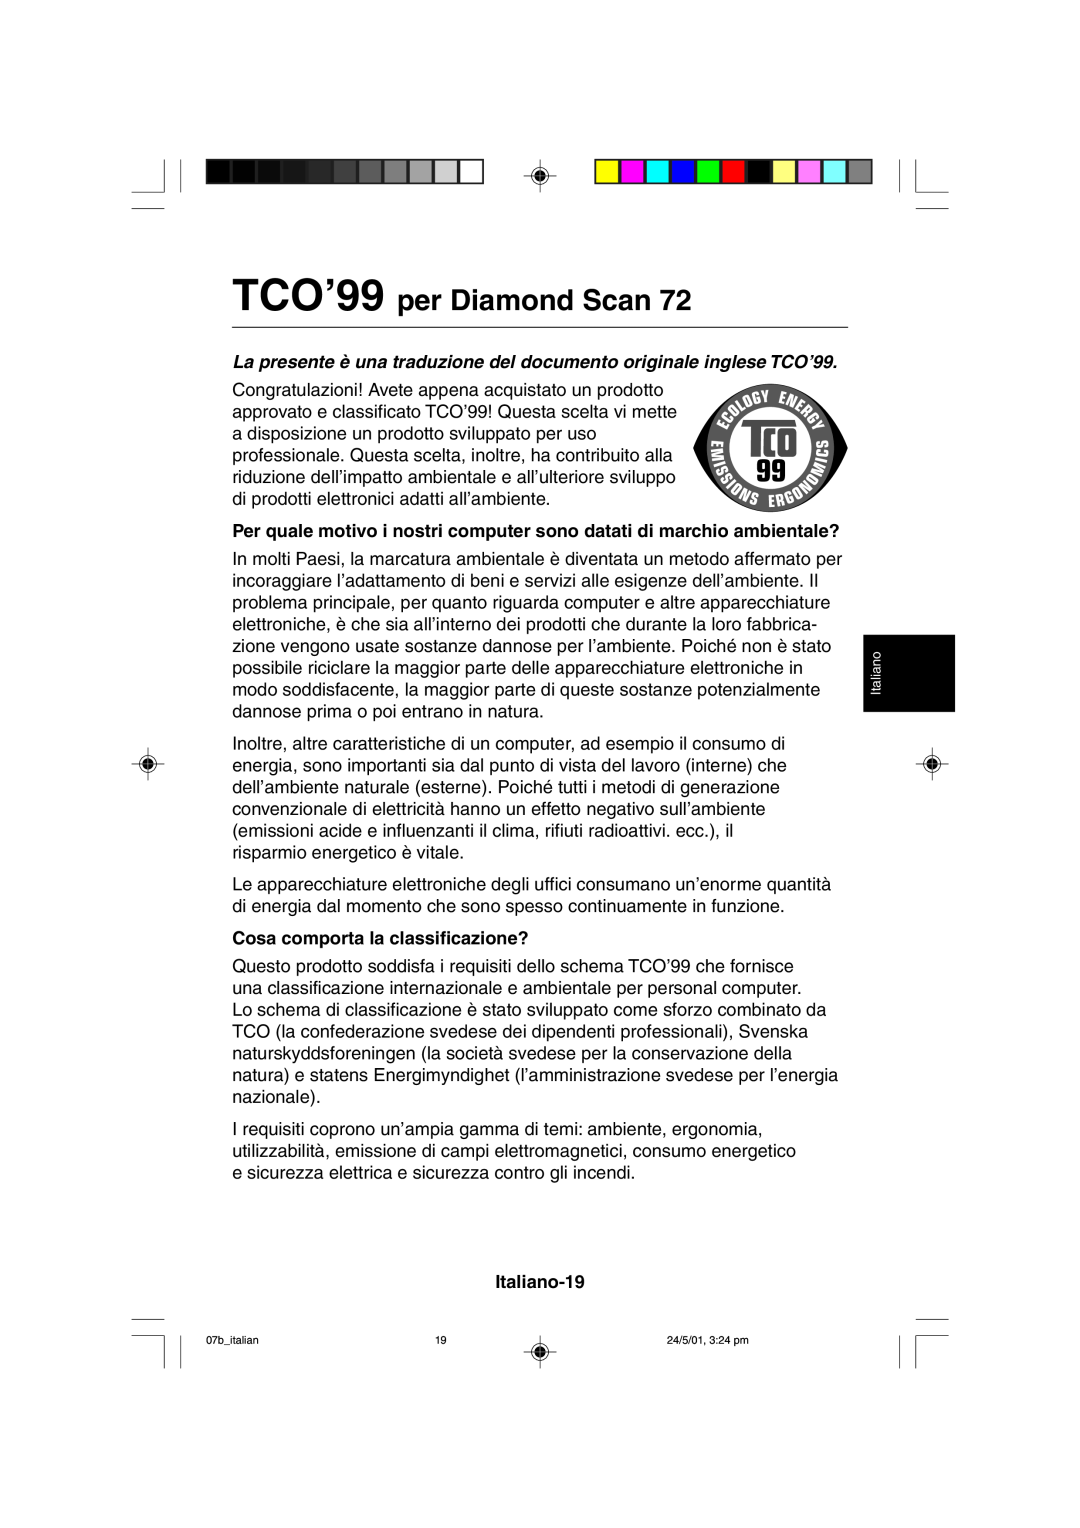 Mitsubishi Electronics M557 TCO’99 per Diamond Scan, La presente è una traduzione del documento originale inglese TCO’99 